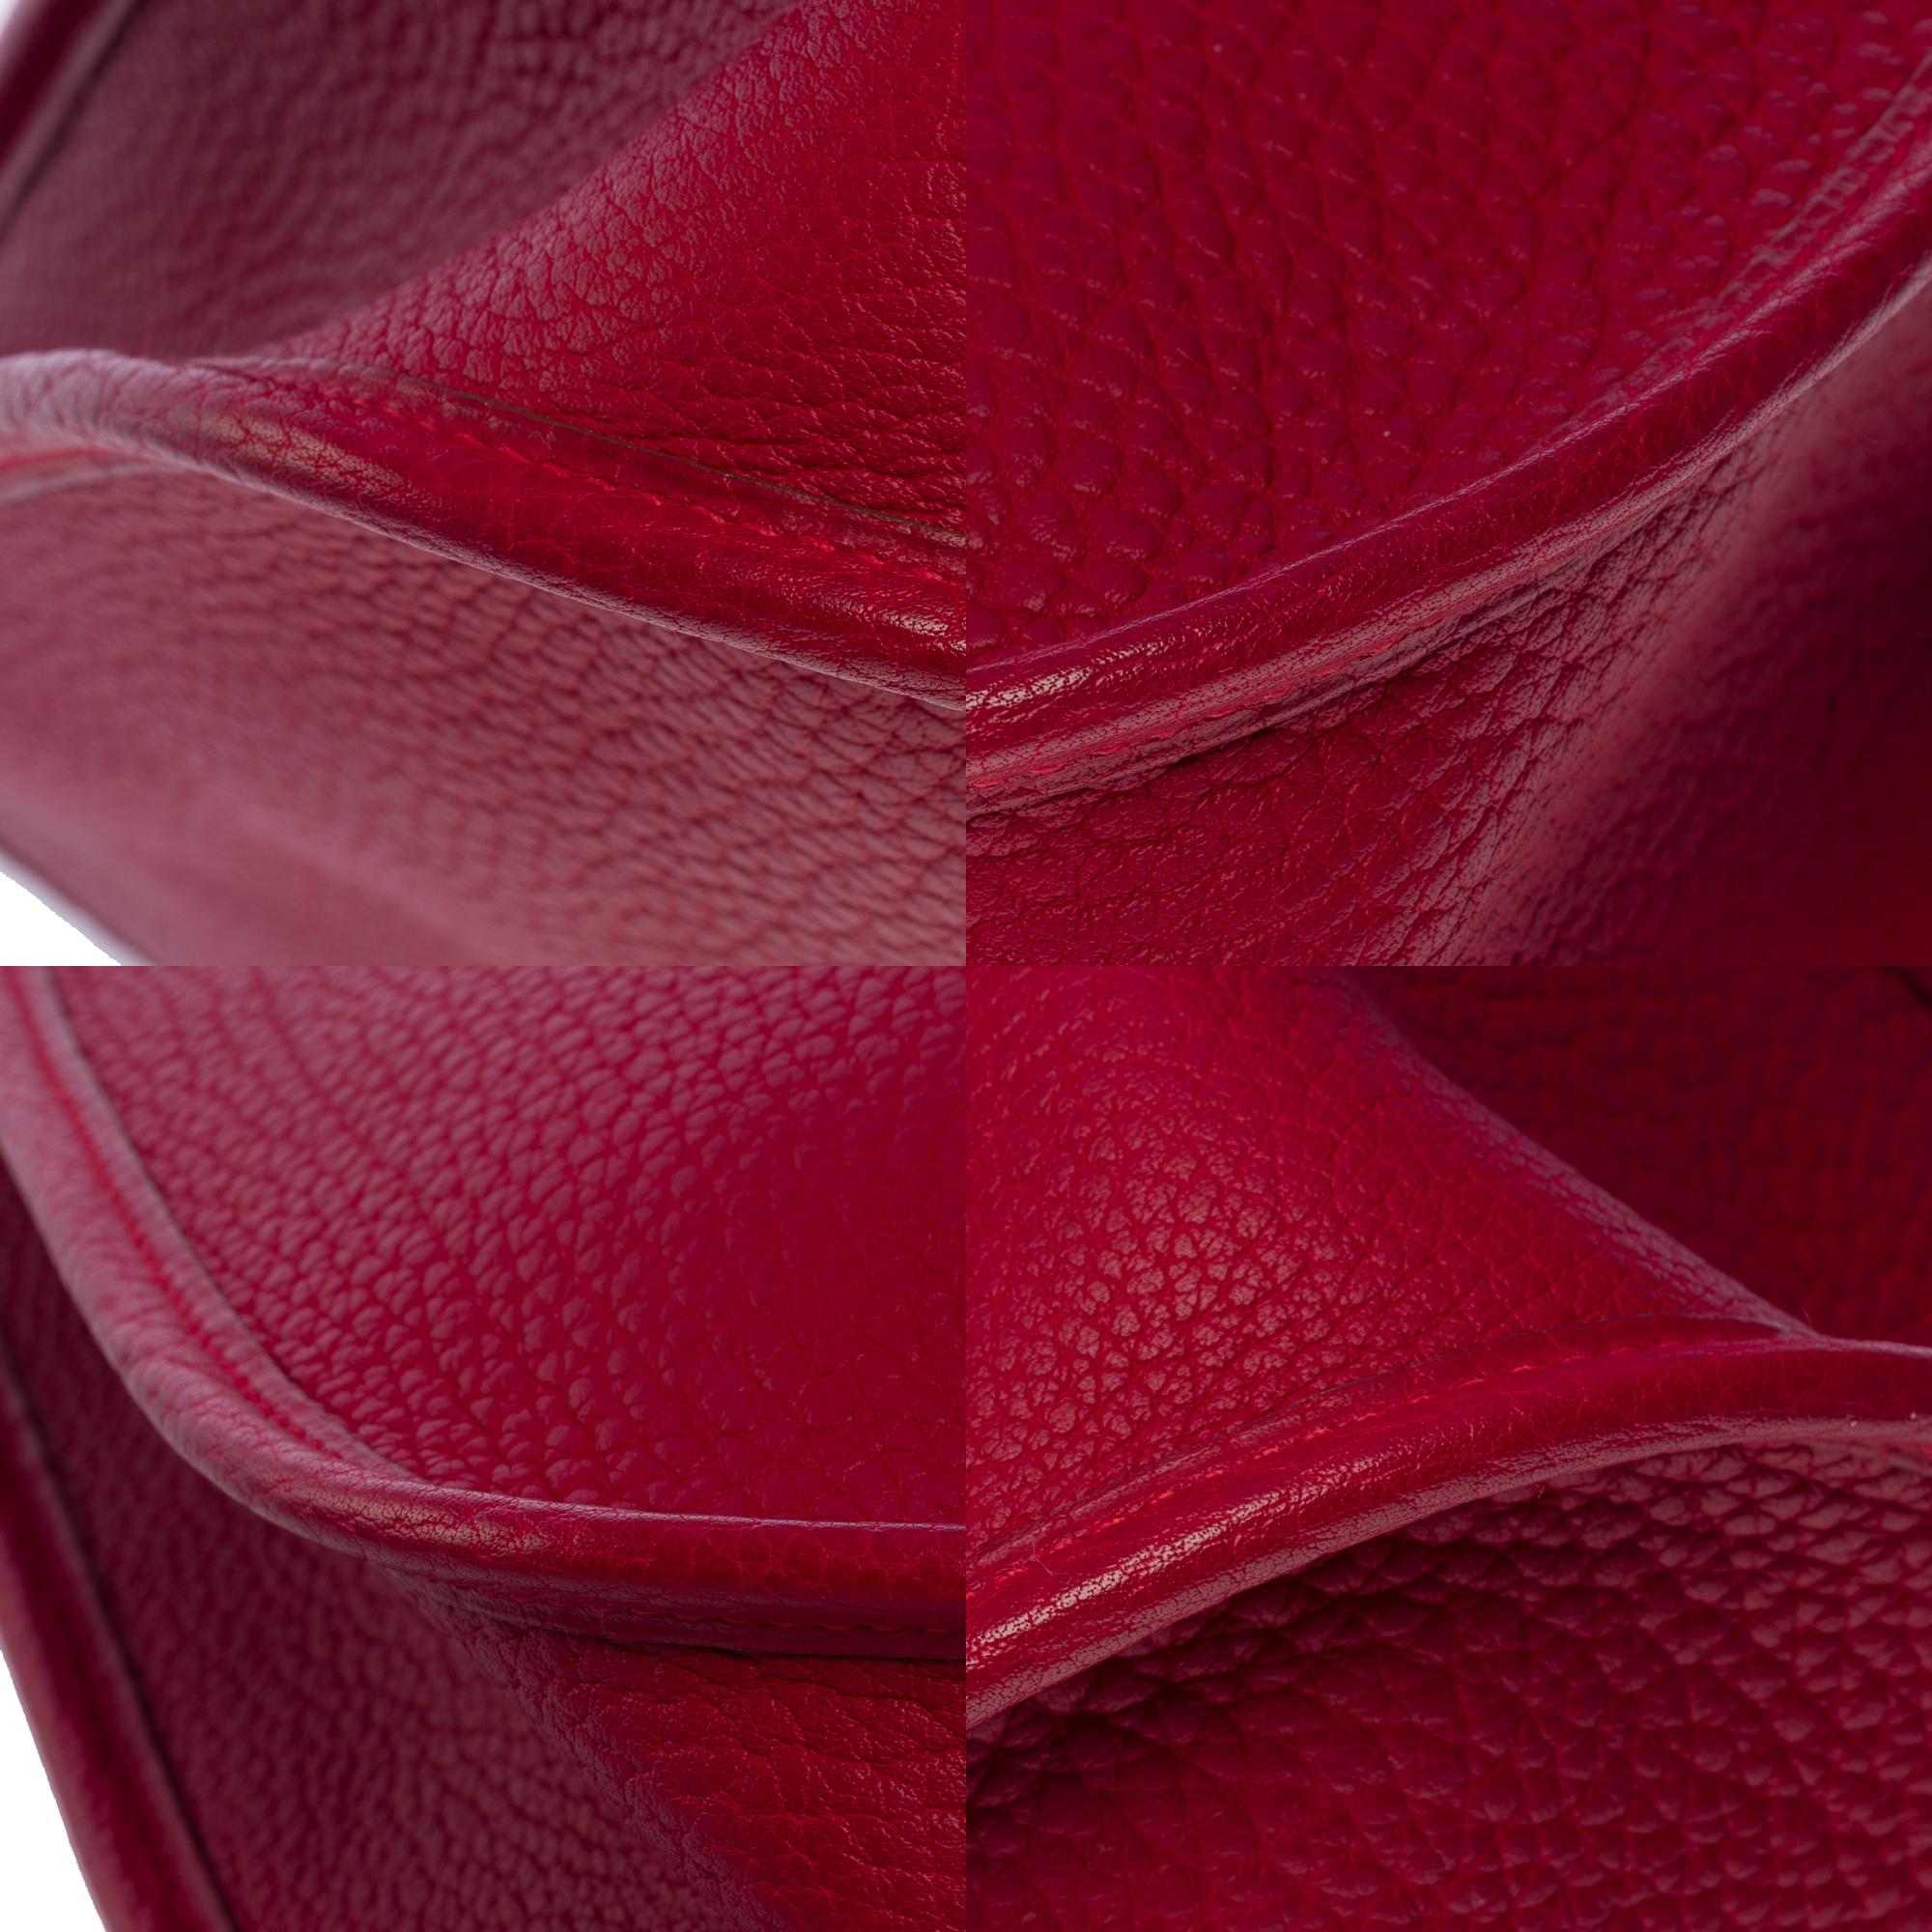 Gorgeous Hermès Evelyne 33 (GM)  shoulder bag in Red Casaque Togo leather, GHW For Sale 8